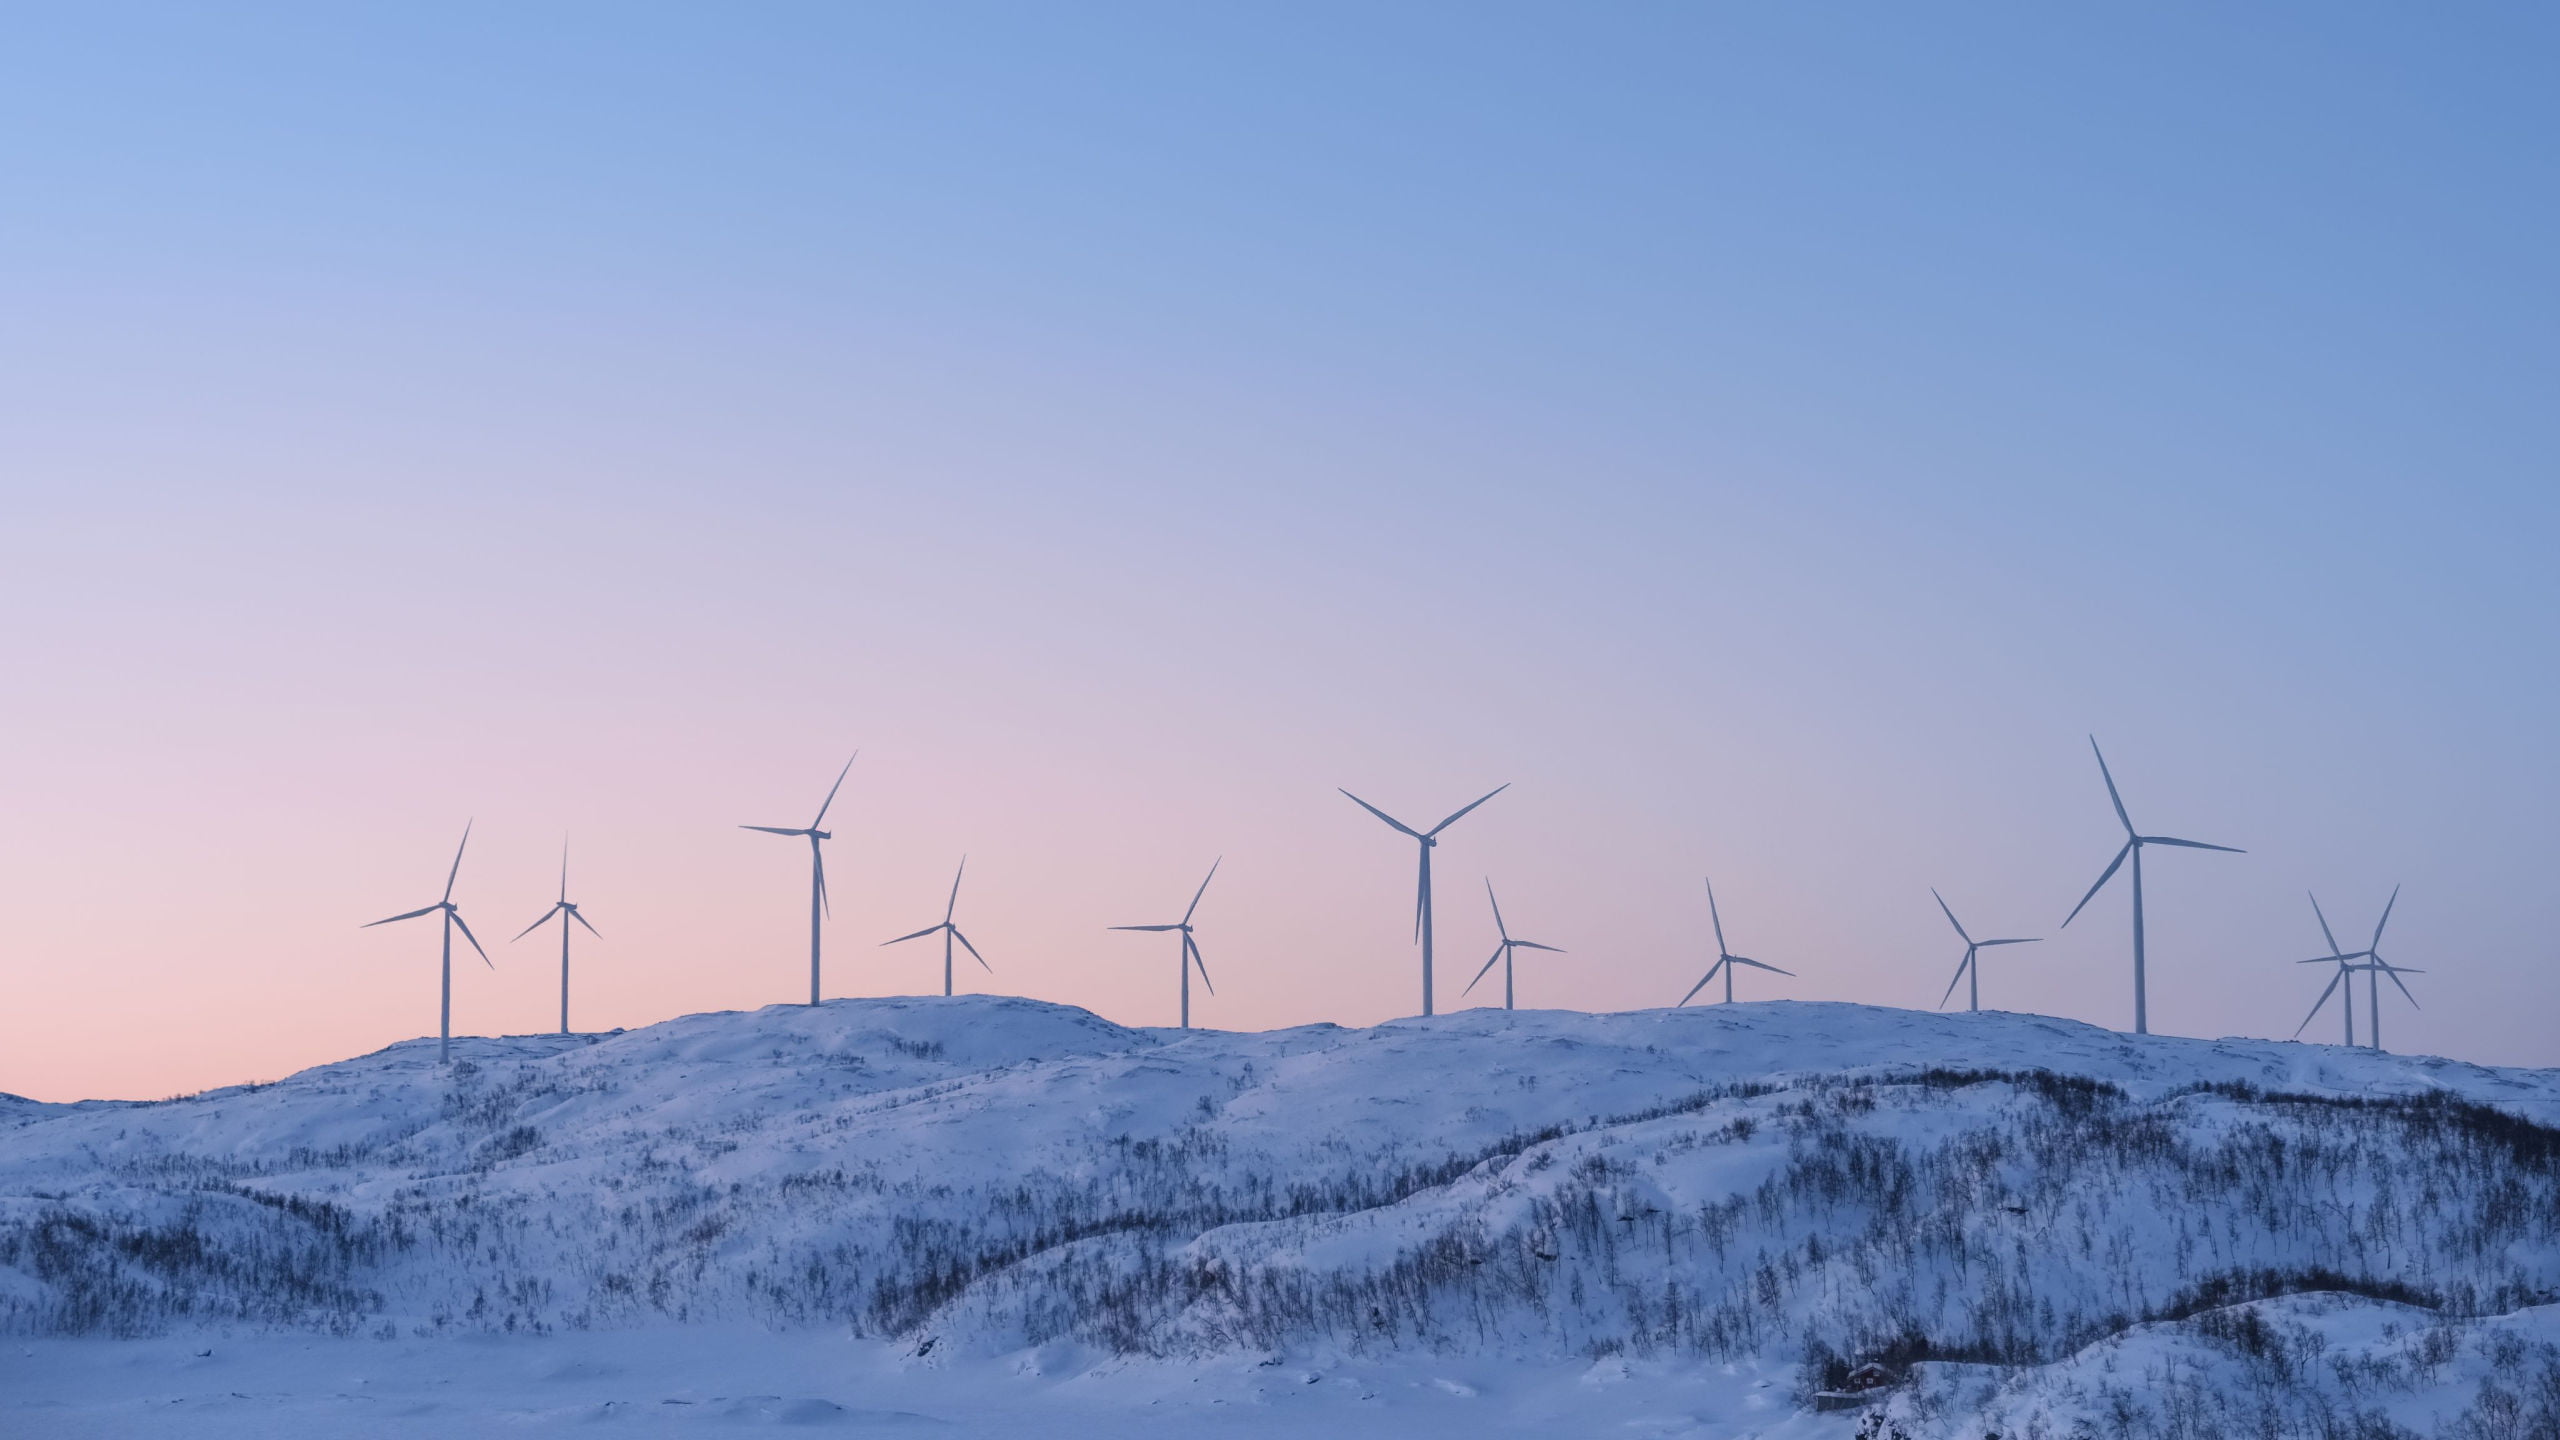 Norway wind farm on snowy mountain.